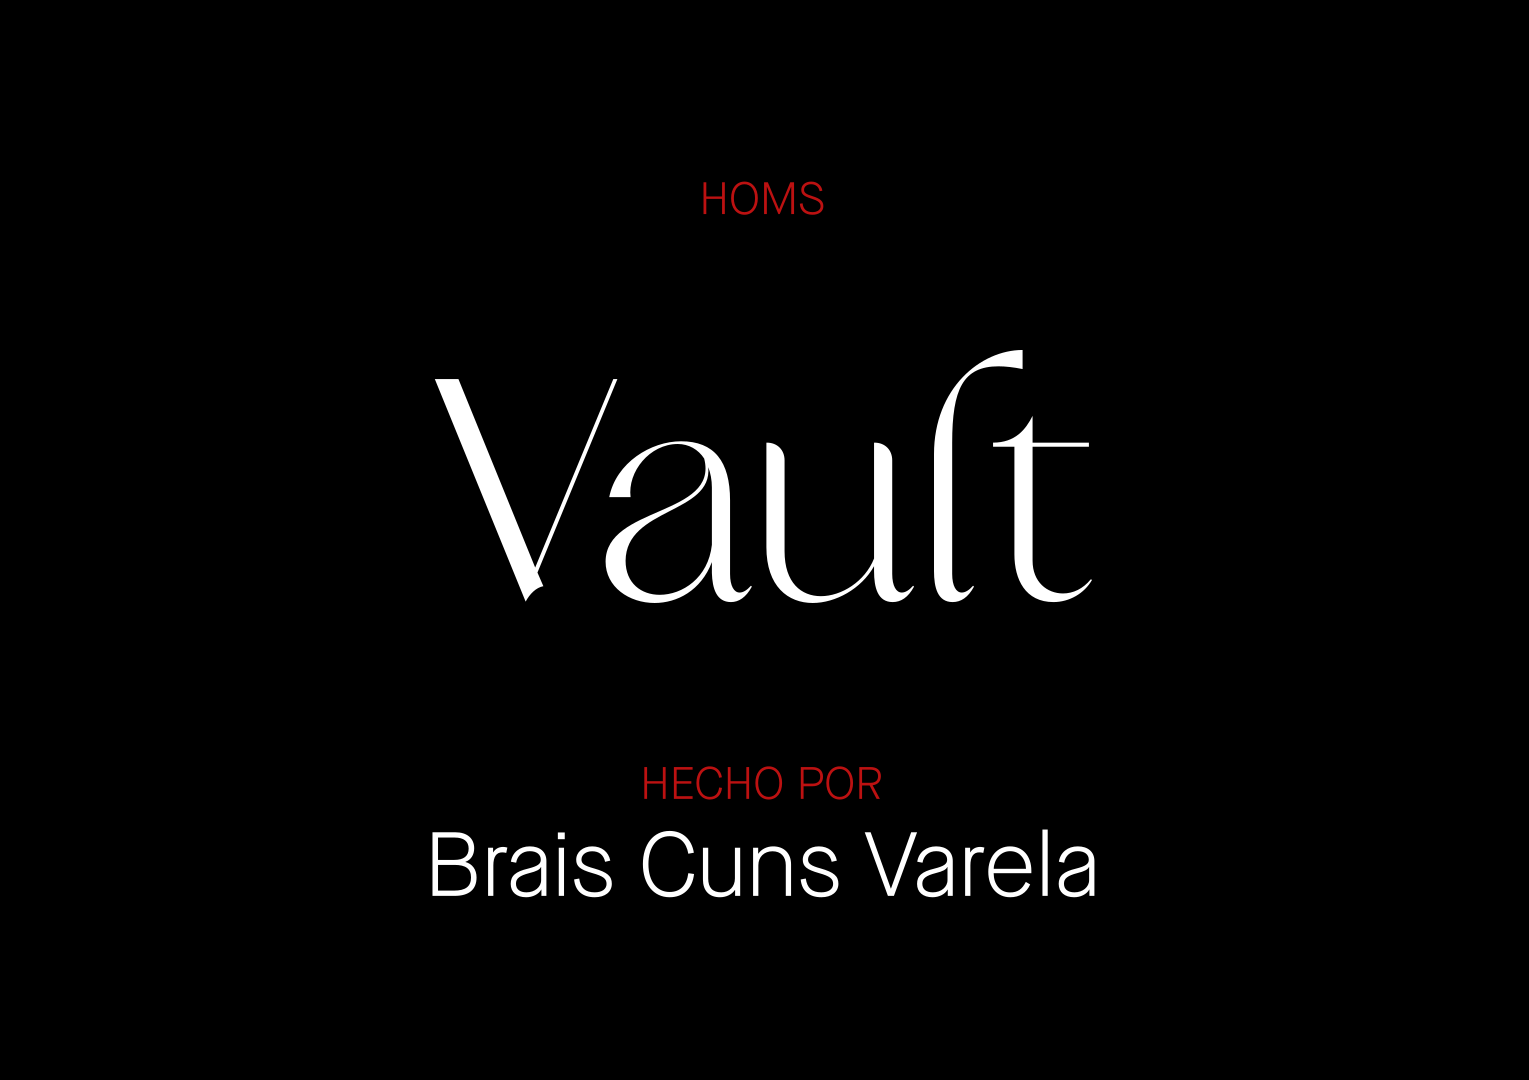 HOMS-Vault